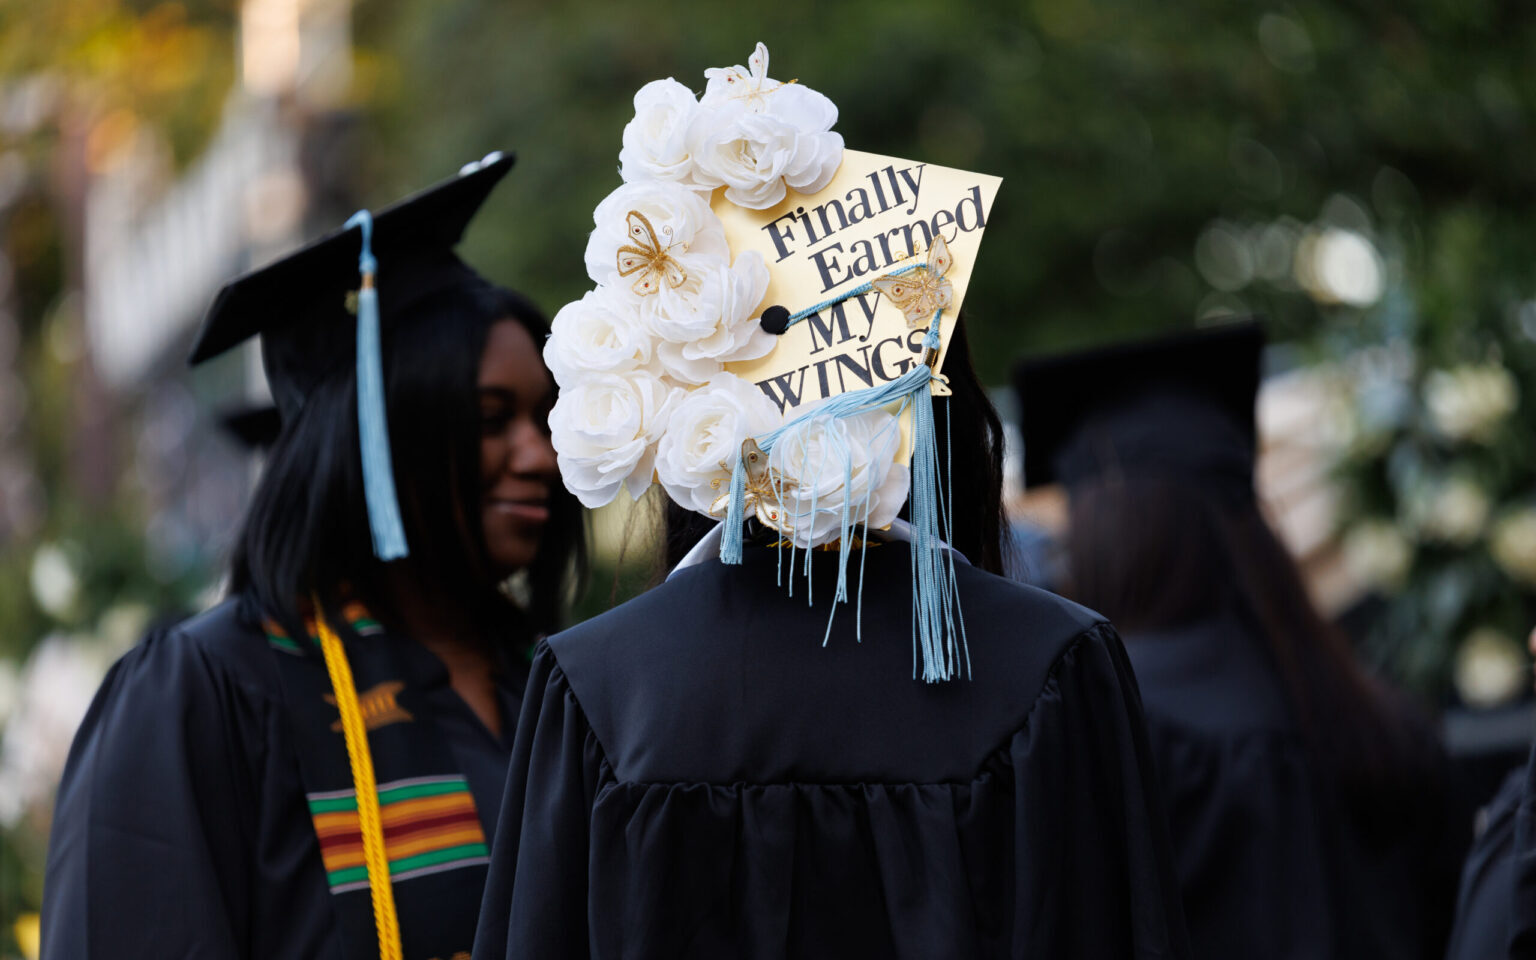 A student's graduation cap